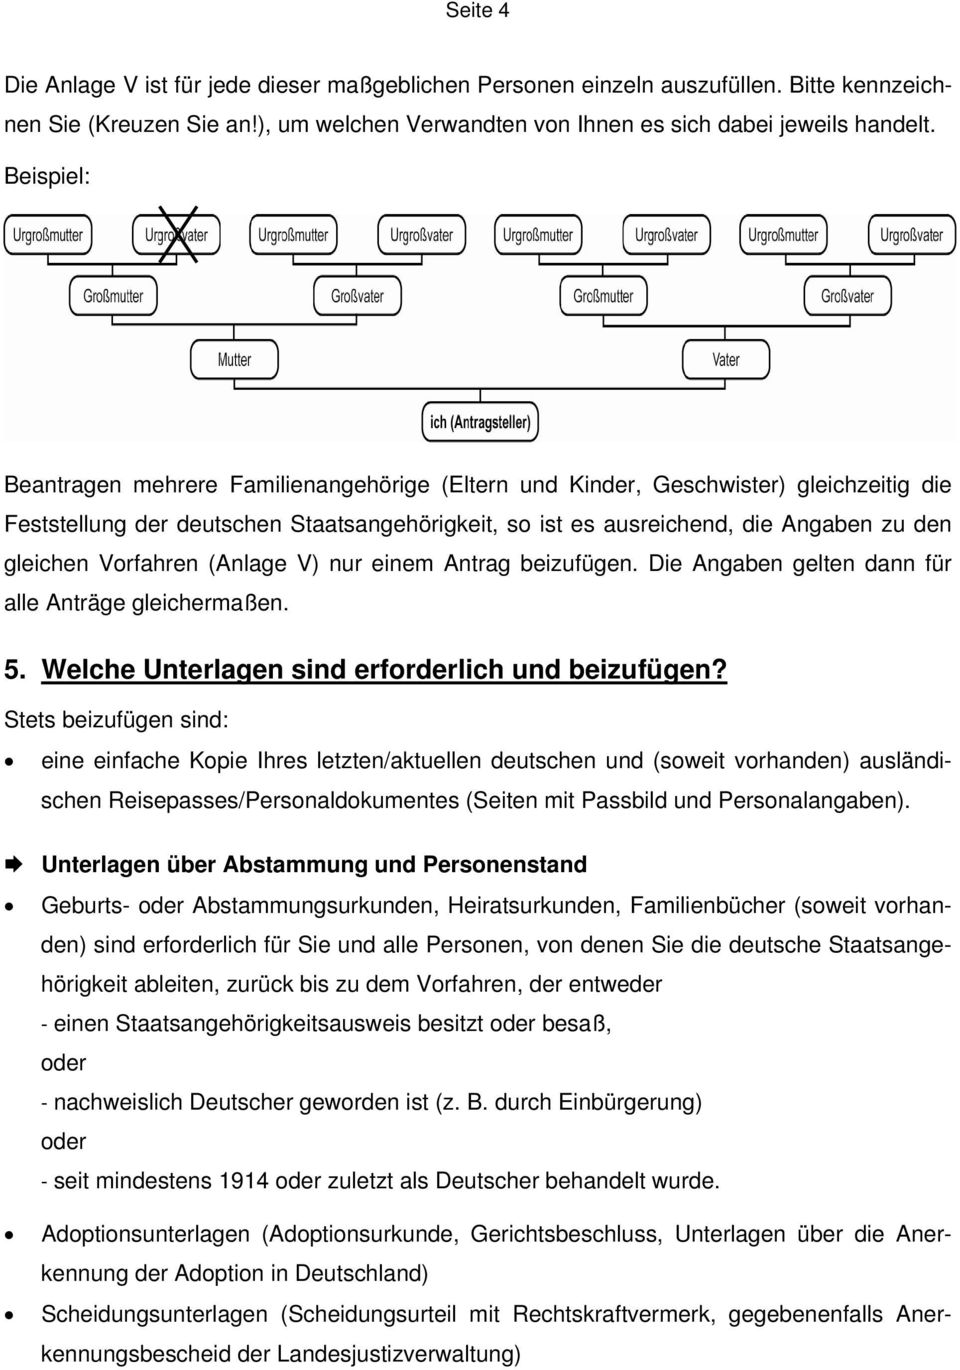 Merkblatt Feststellung Der Deutschen Staatsangehorigkeit Pdf Free Download